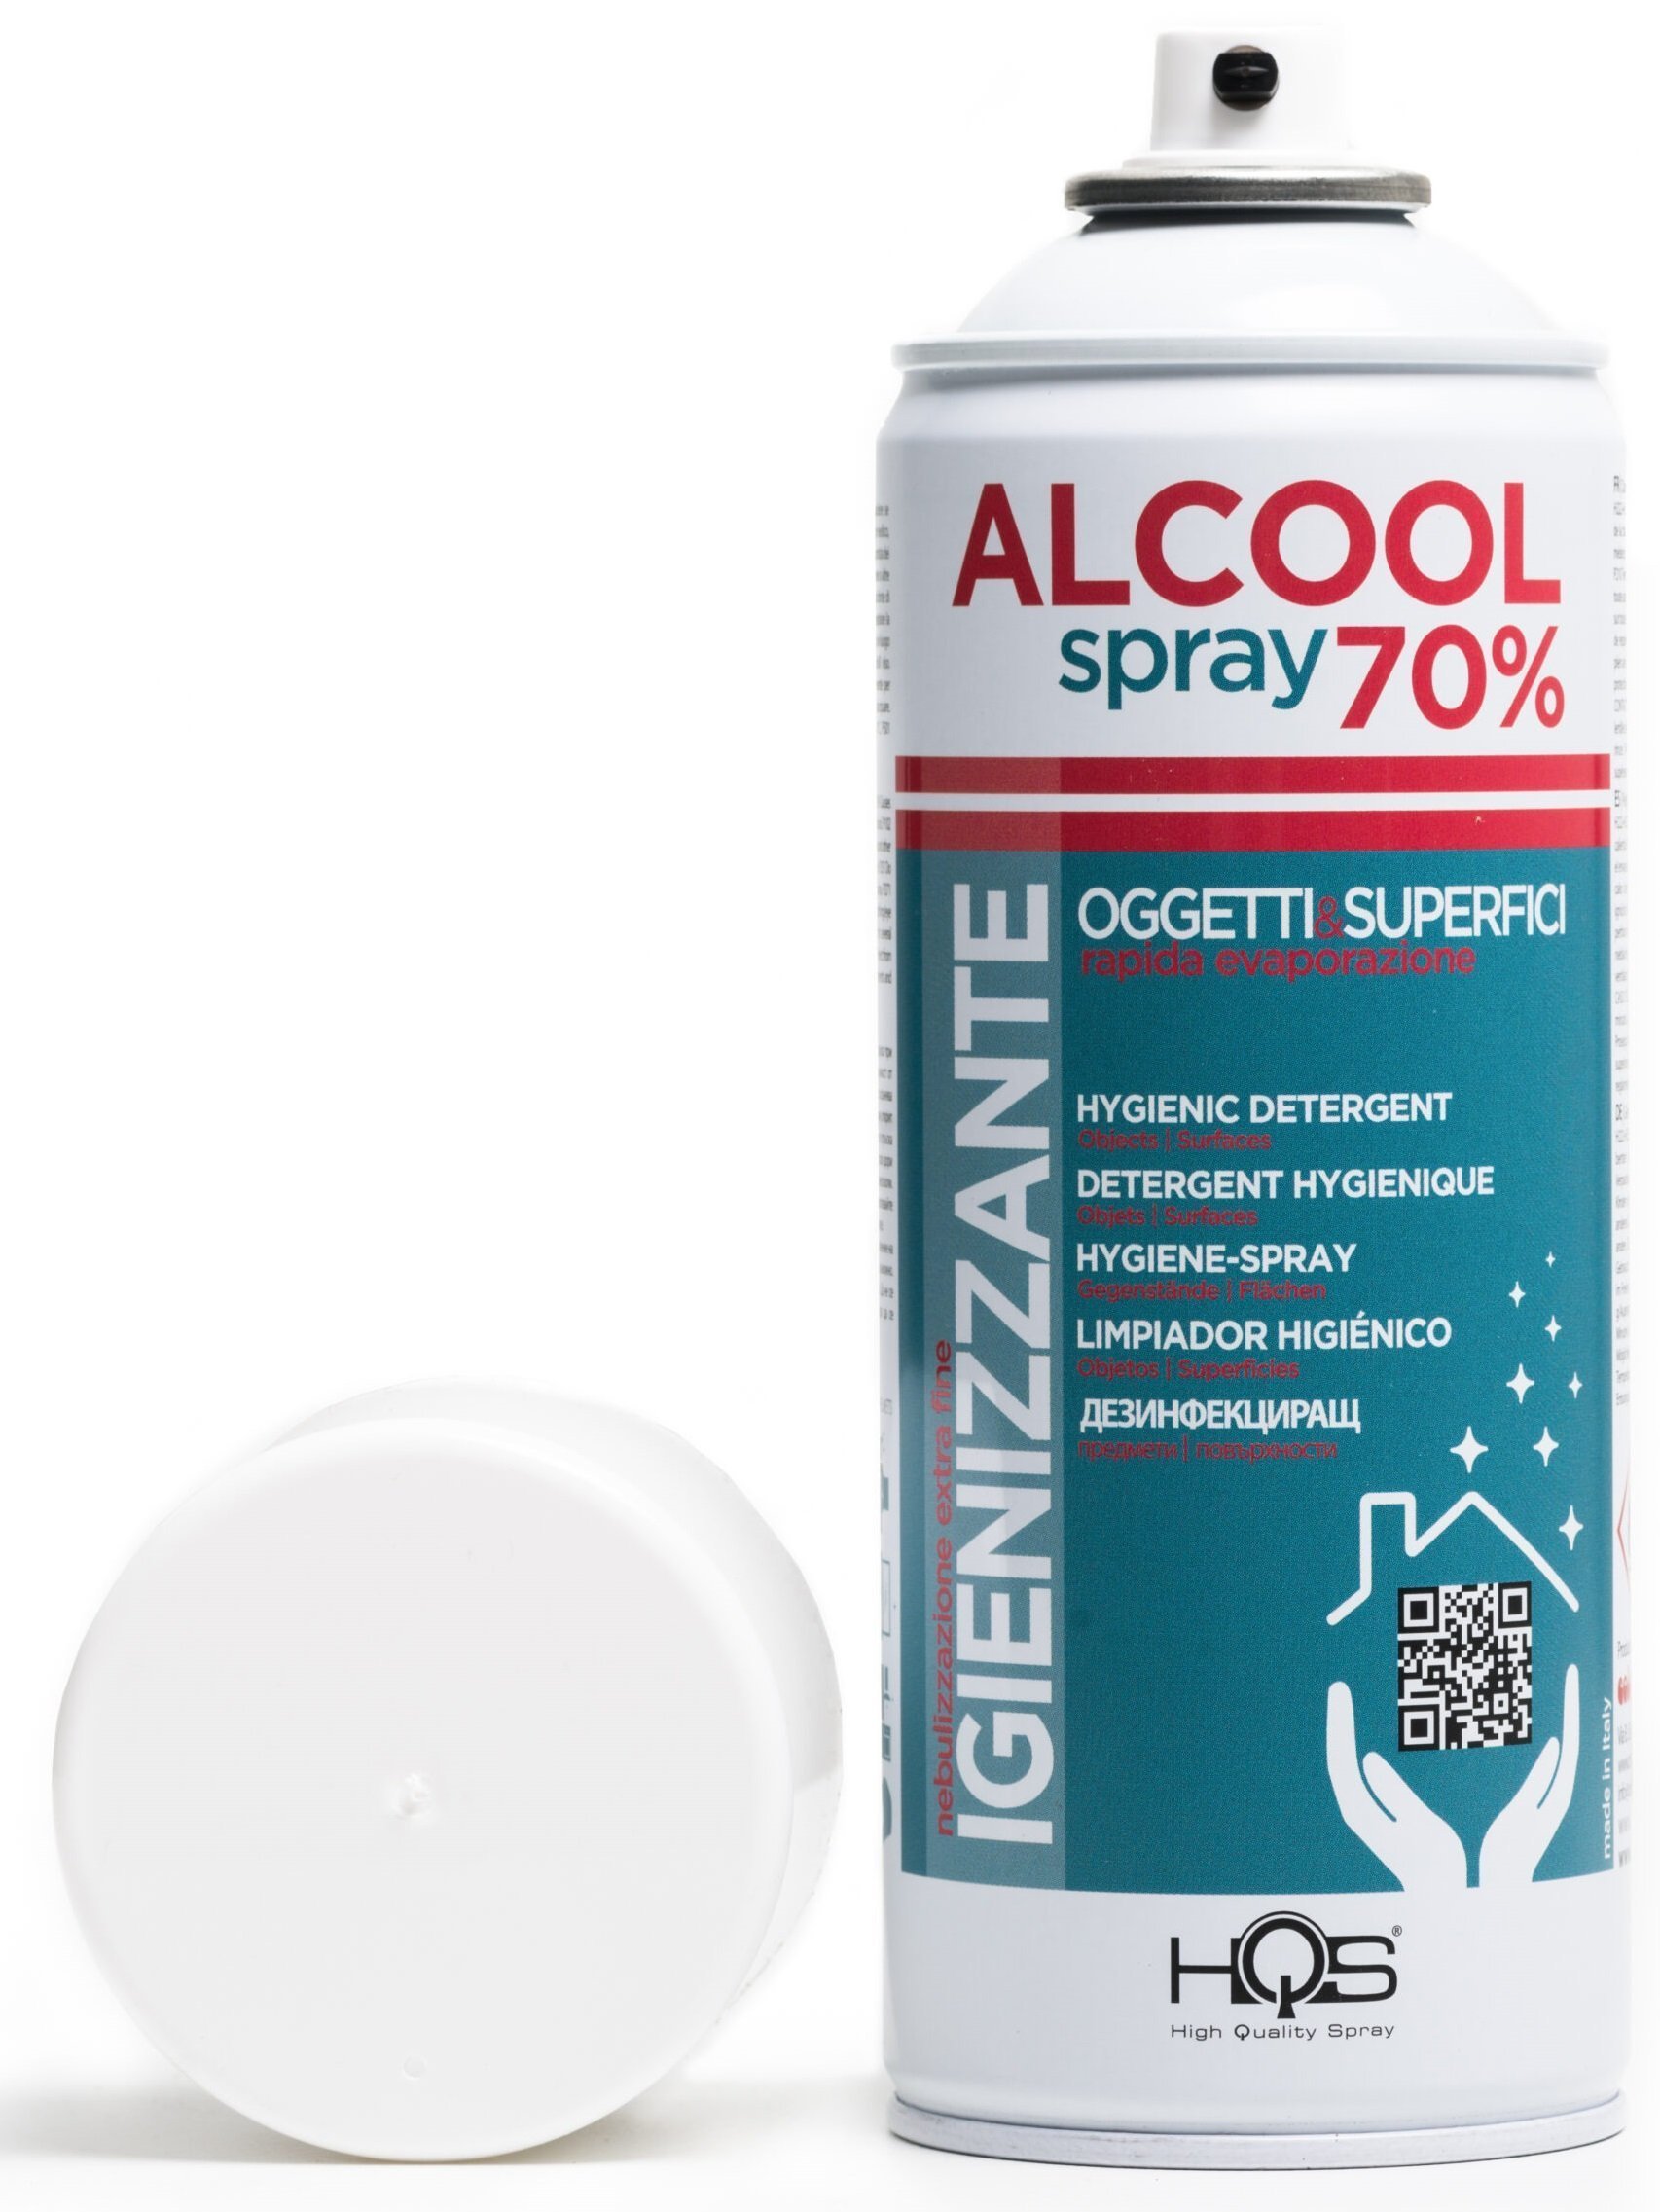 https://www.capellomio.it/banner/colorpack-hqs-alcool-spray-70-igienizzante-oggetti-e-superfici-400ml_14015_it_b.jpg